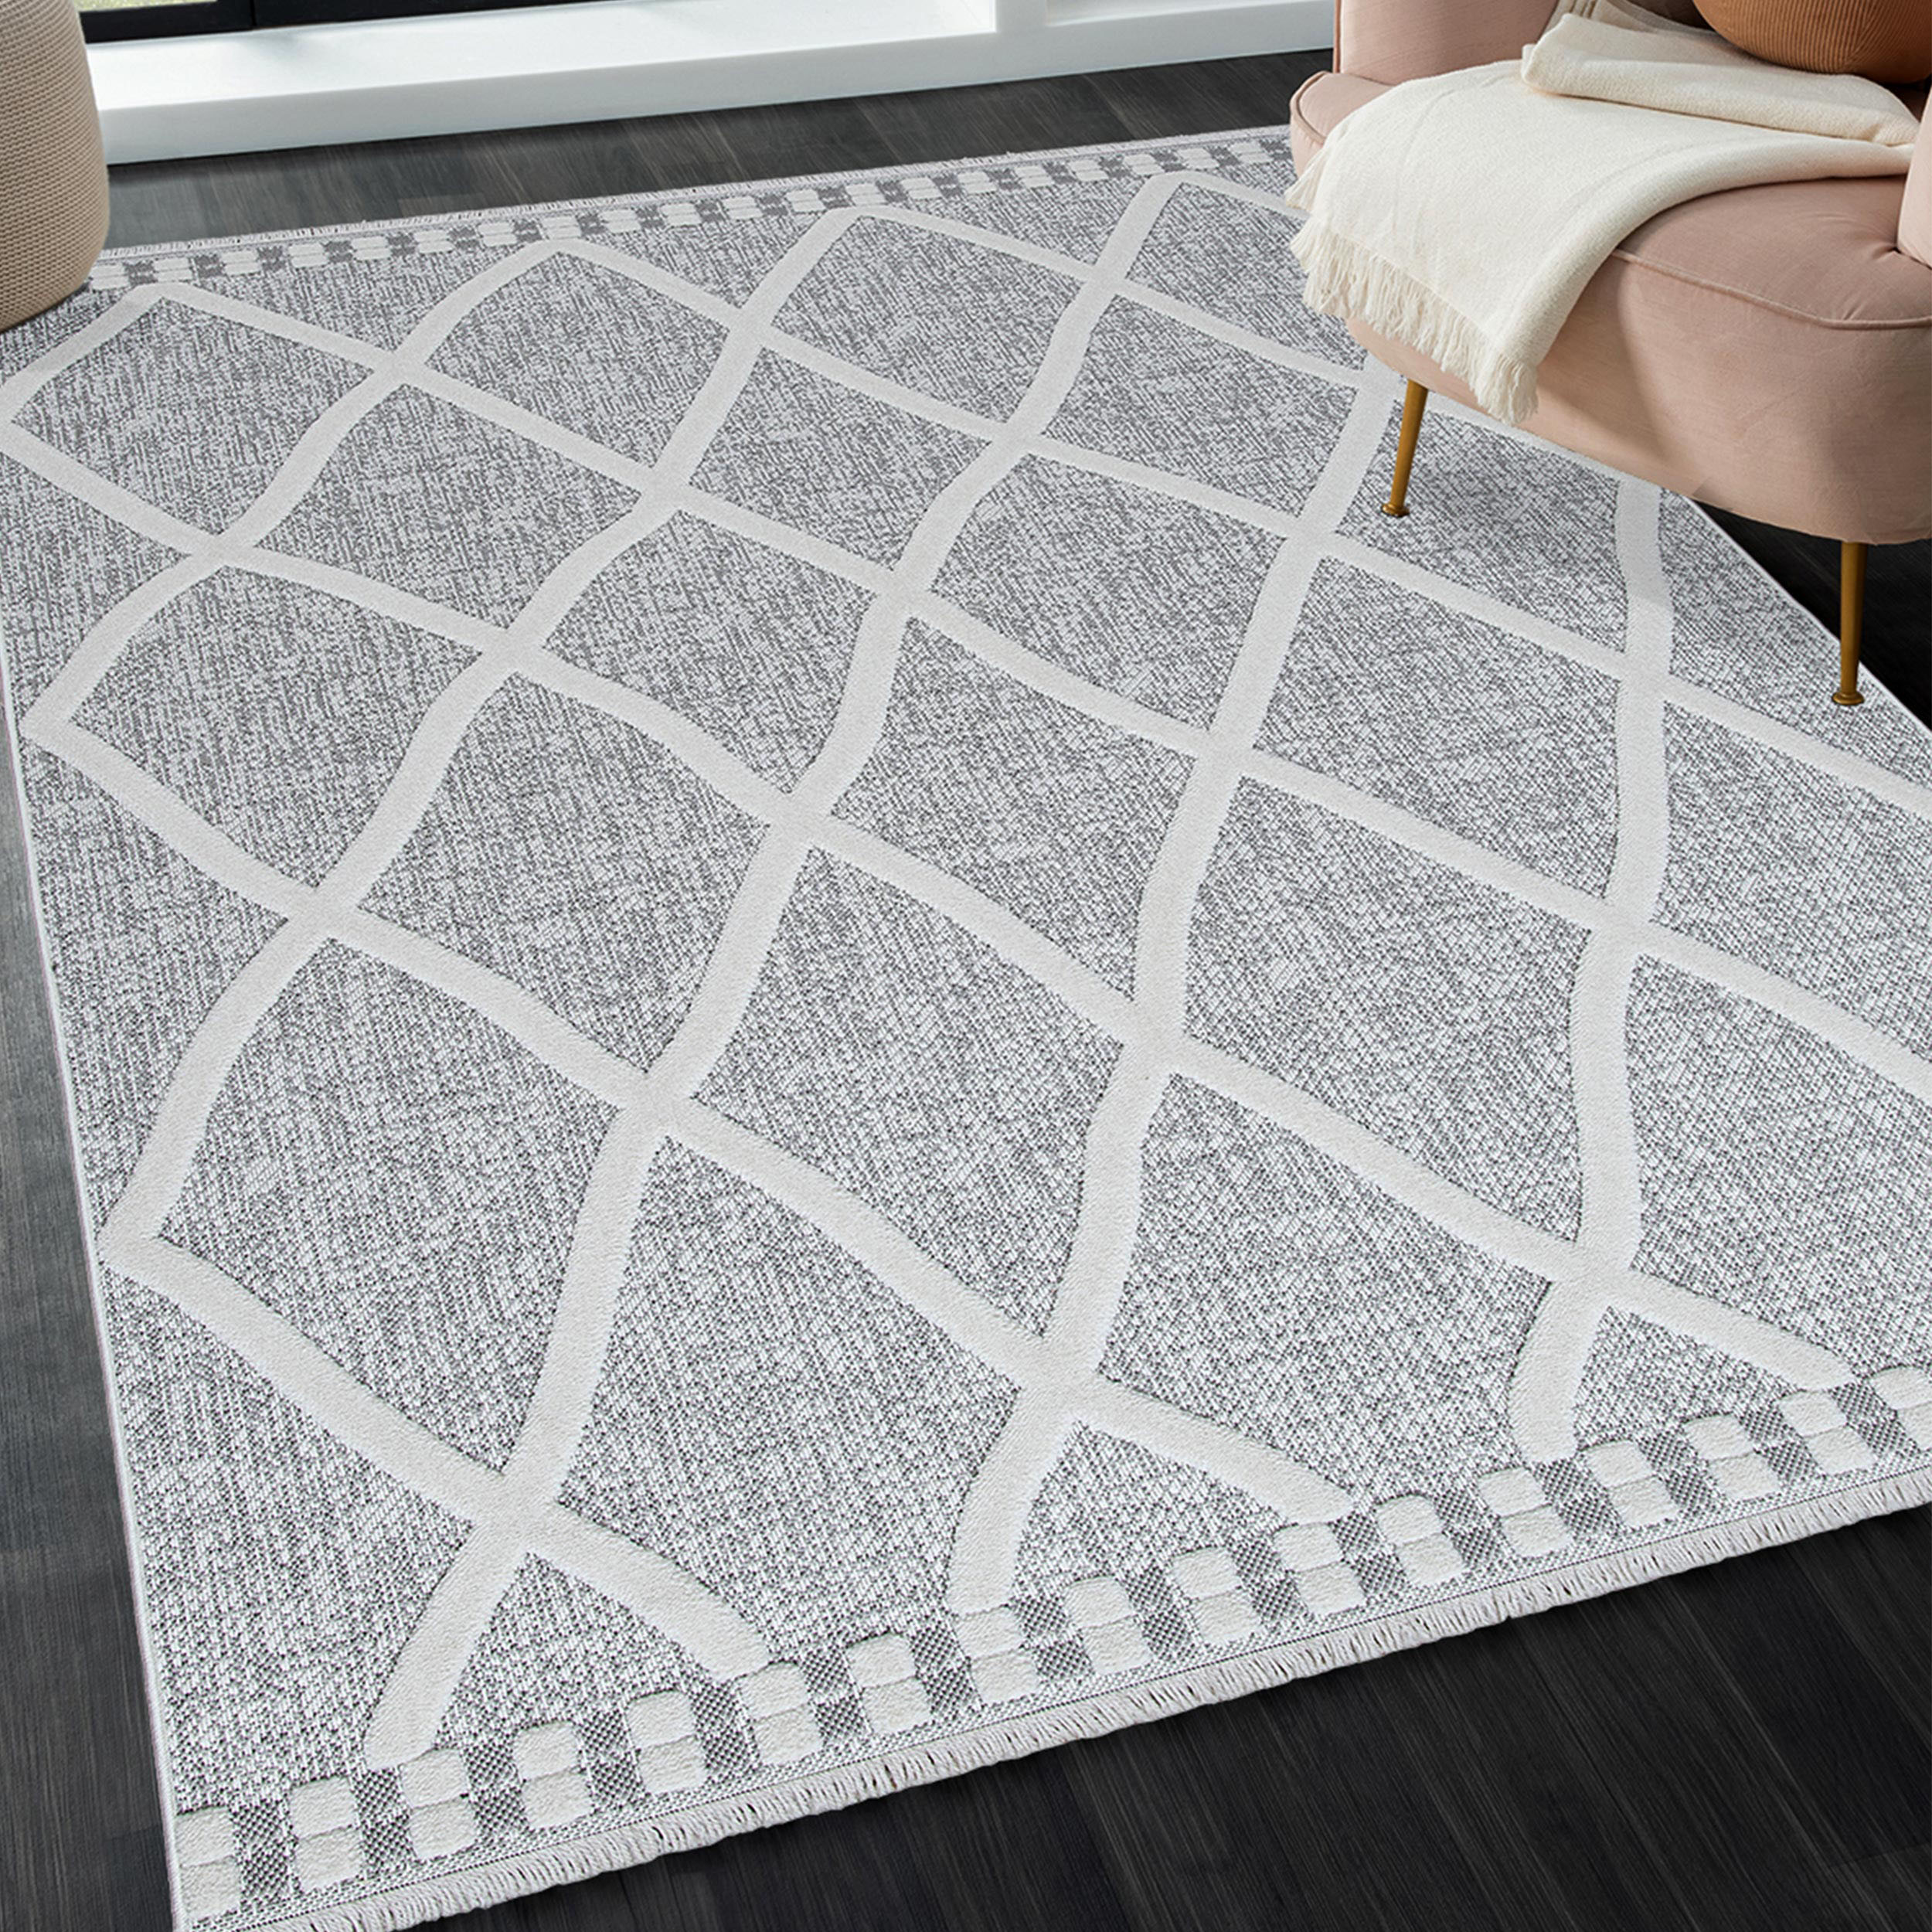 Mynes Home Teppich Kurzflor Hochflor Hochwertiger 3D Muster für Wohnzimmer Schlafzimmer Flur Modern Abstrakt Rauten Design Beige Grau Weiss (200x290 cm)